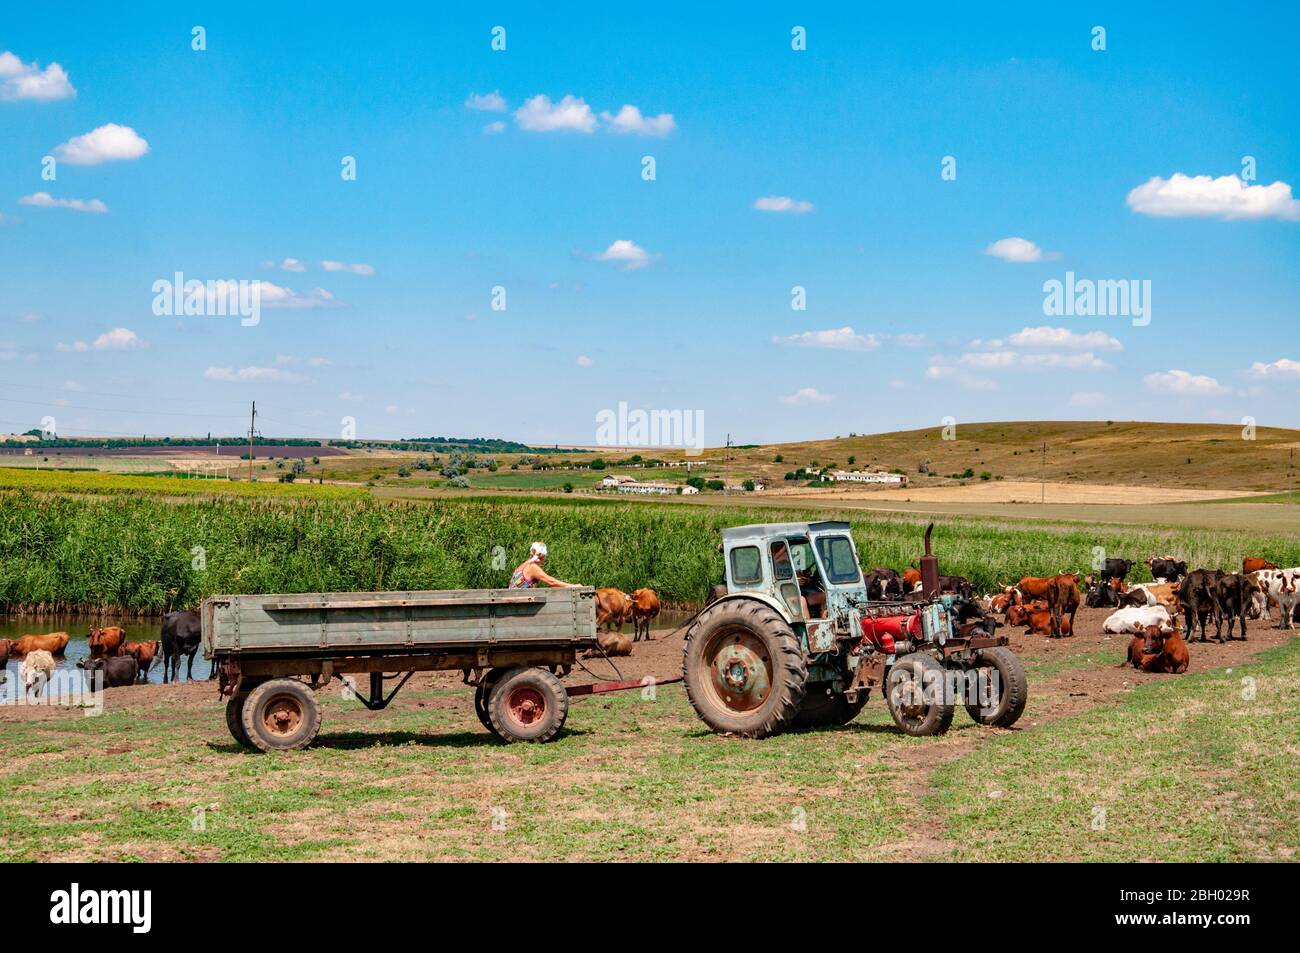 Ländliche Landschaft von landwirtschaftlichen Feld mit alten Traktor und Herde von Kühen in der Nähe des Flusses. Bäuerin im Traktor. Sommer Blick in die Landschaft der Ukraine. Stockfoto